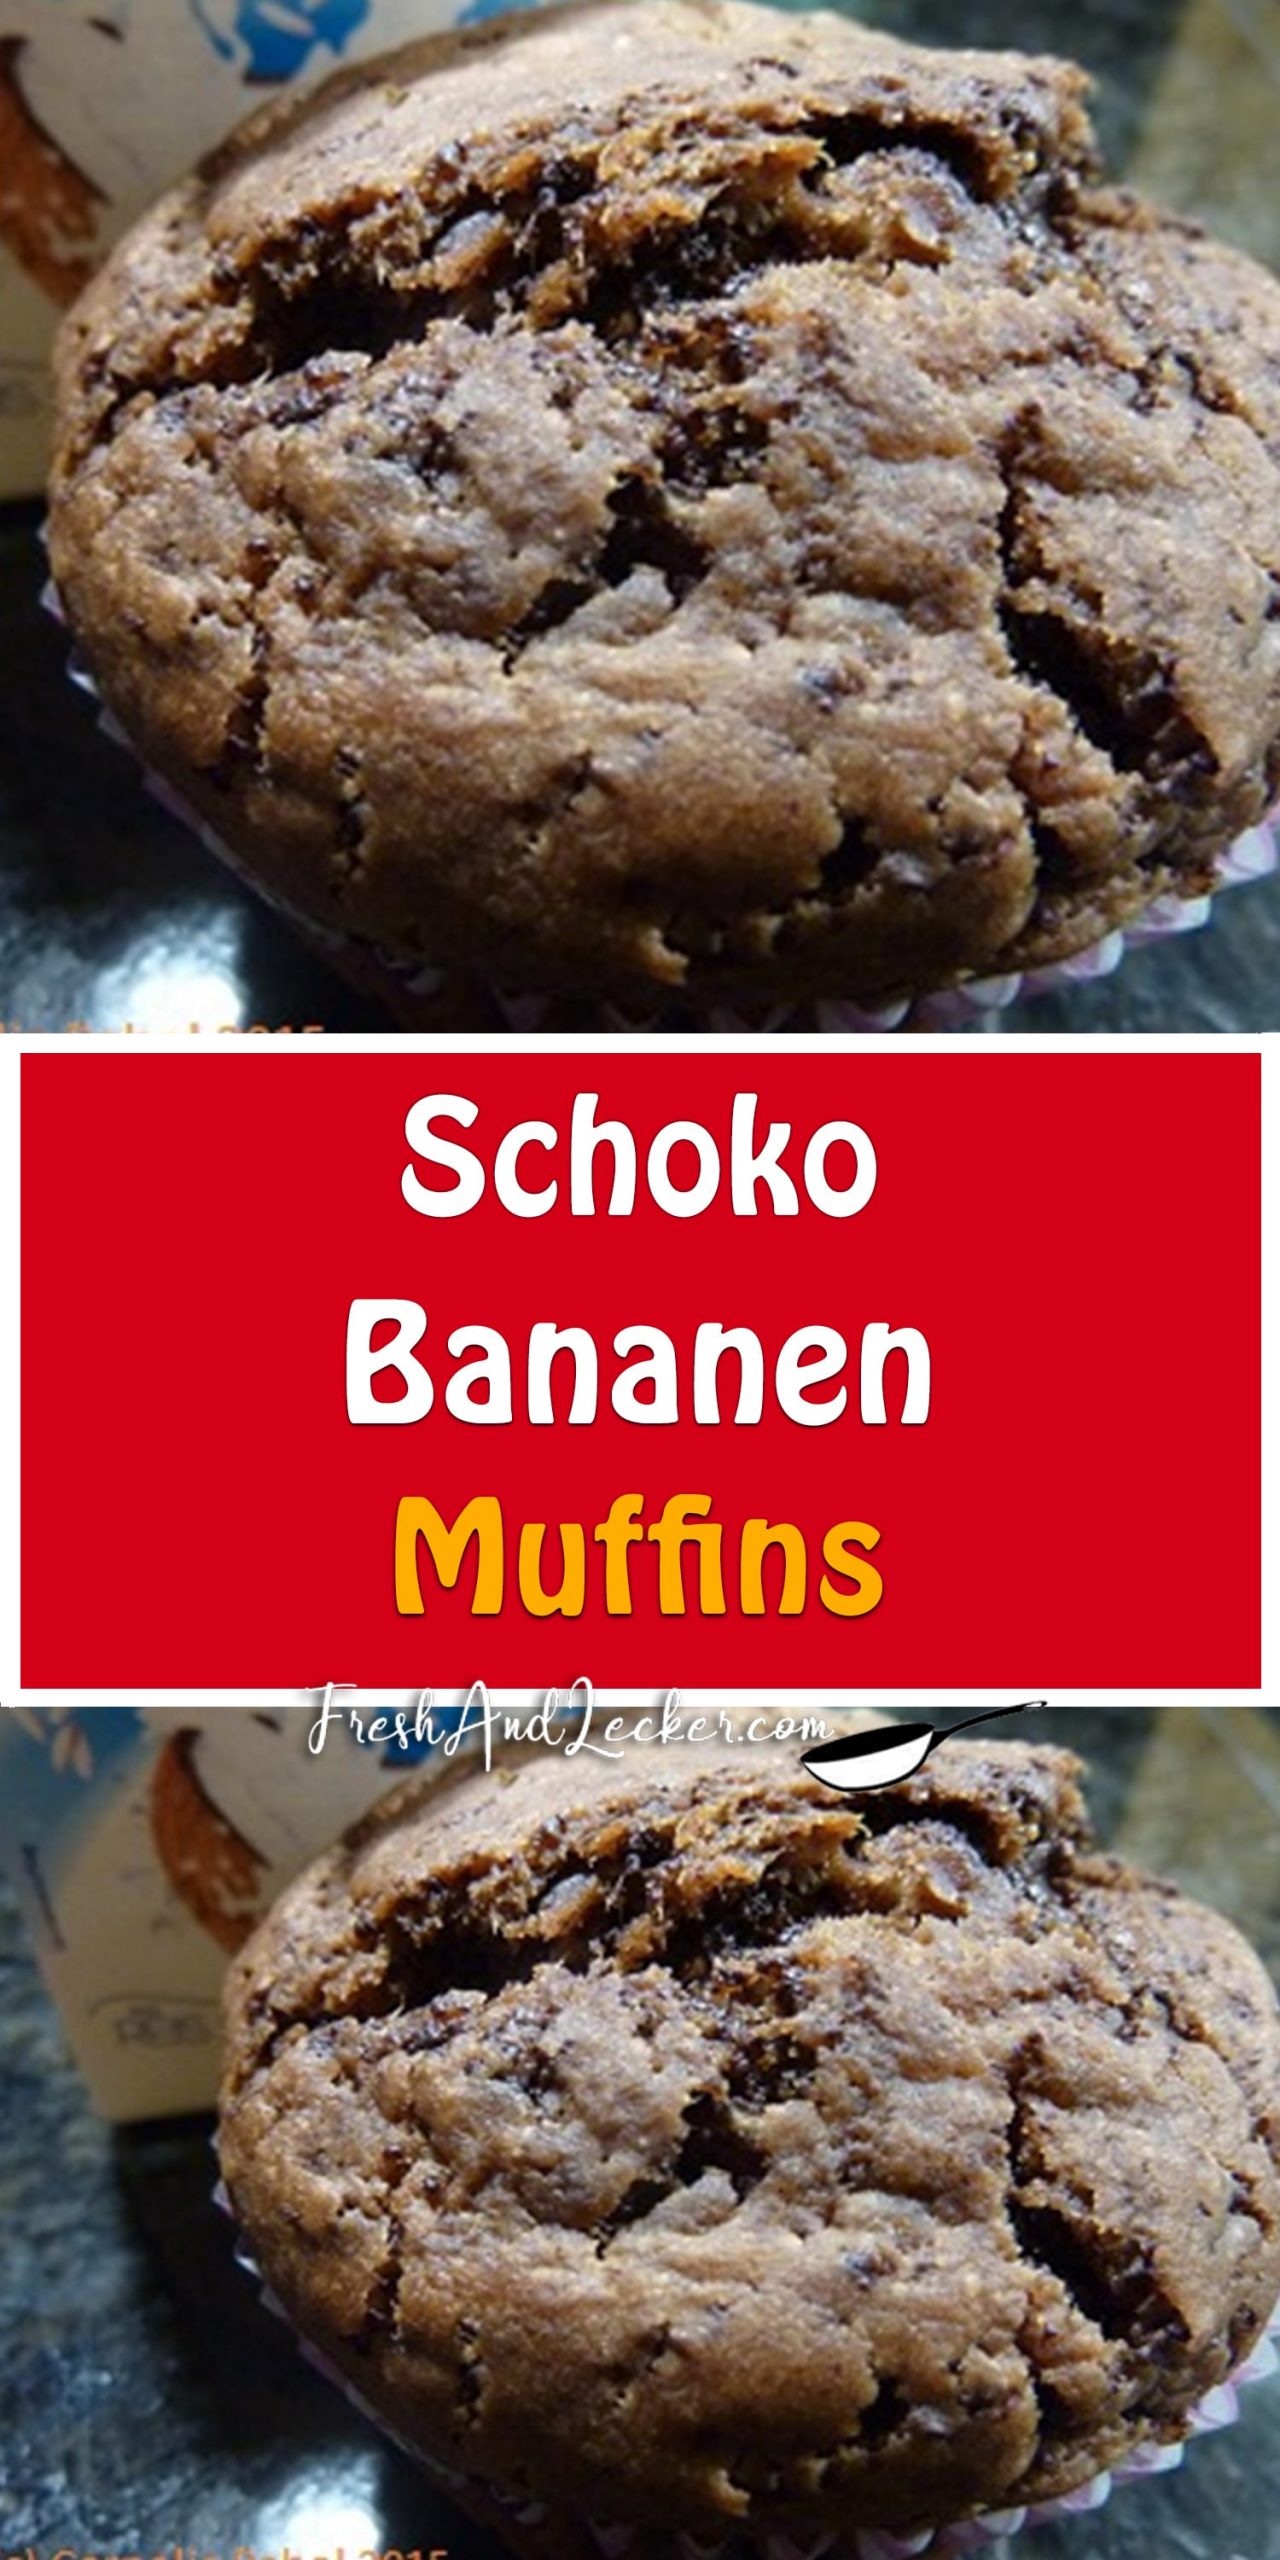 Schoko-Bananen-Muffins - Fresh Lecker